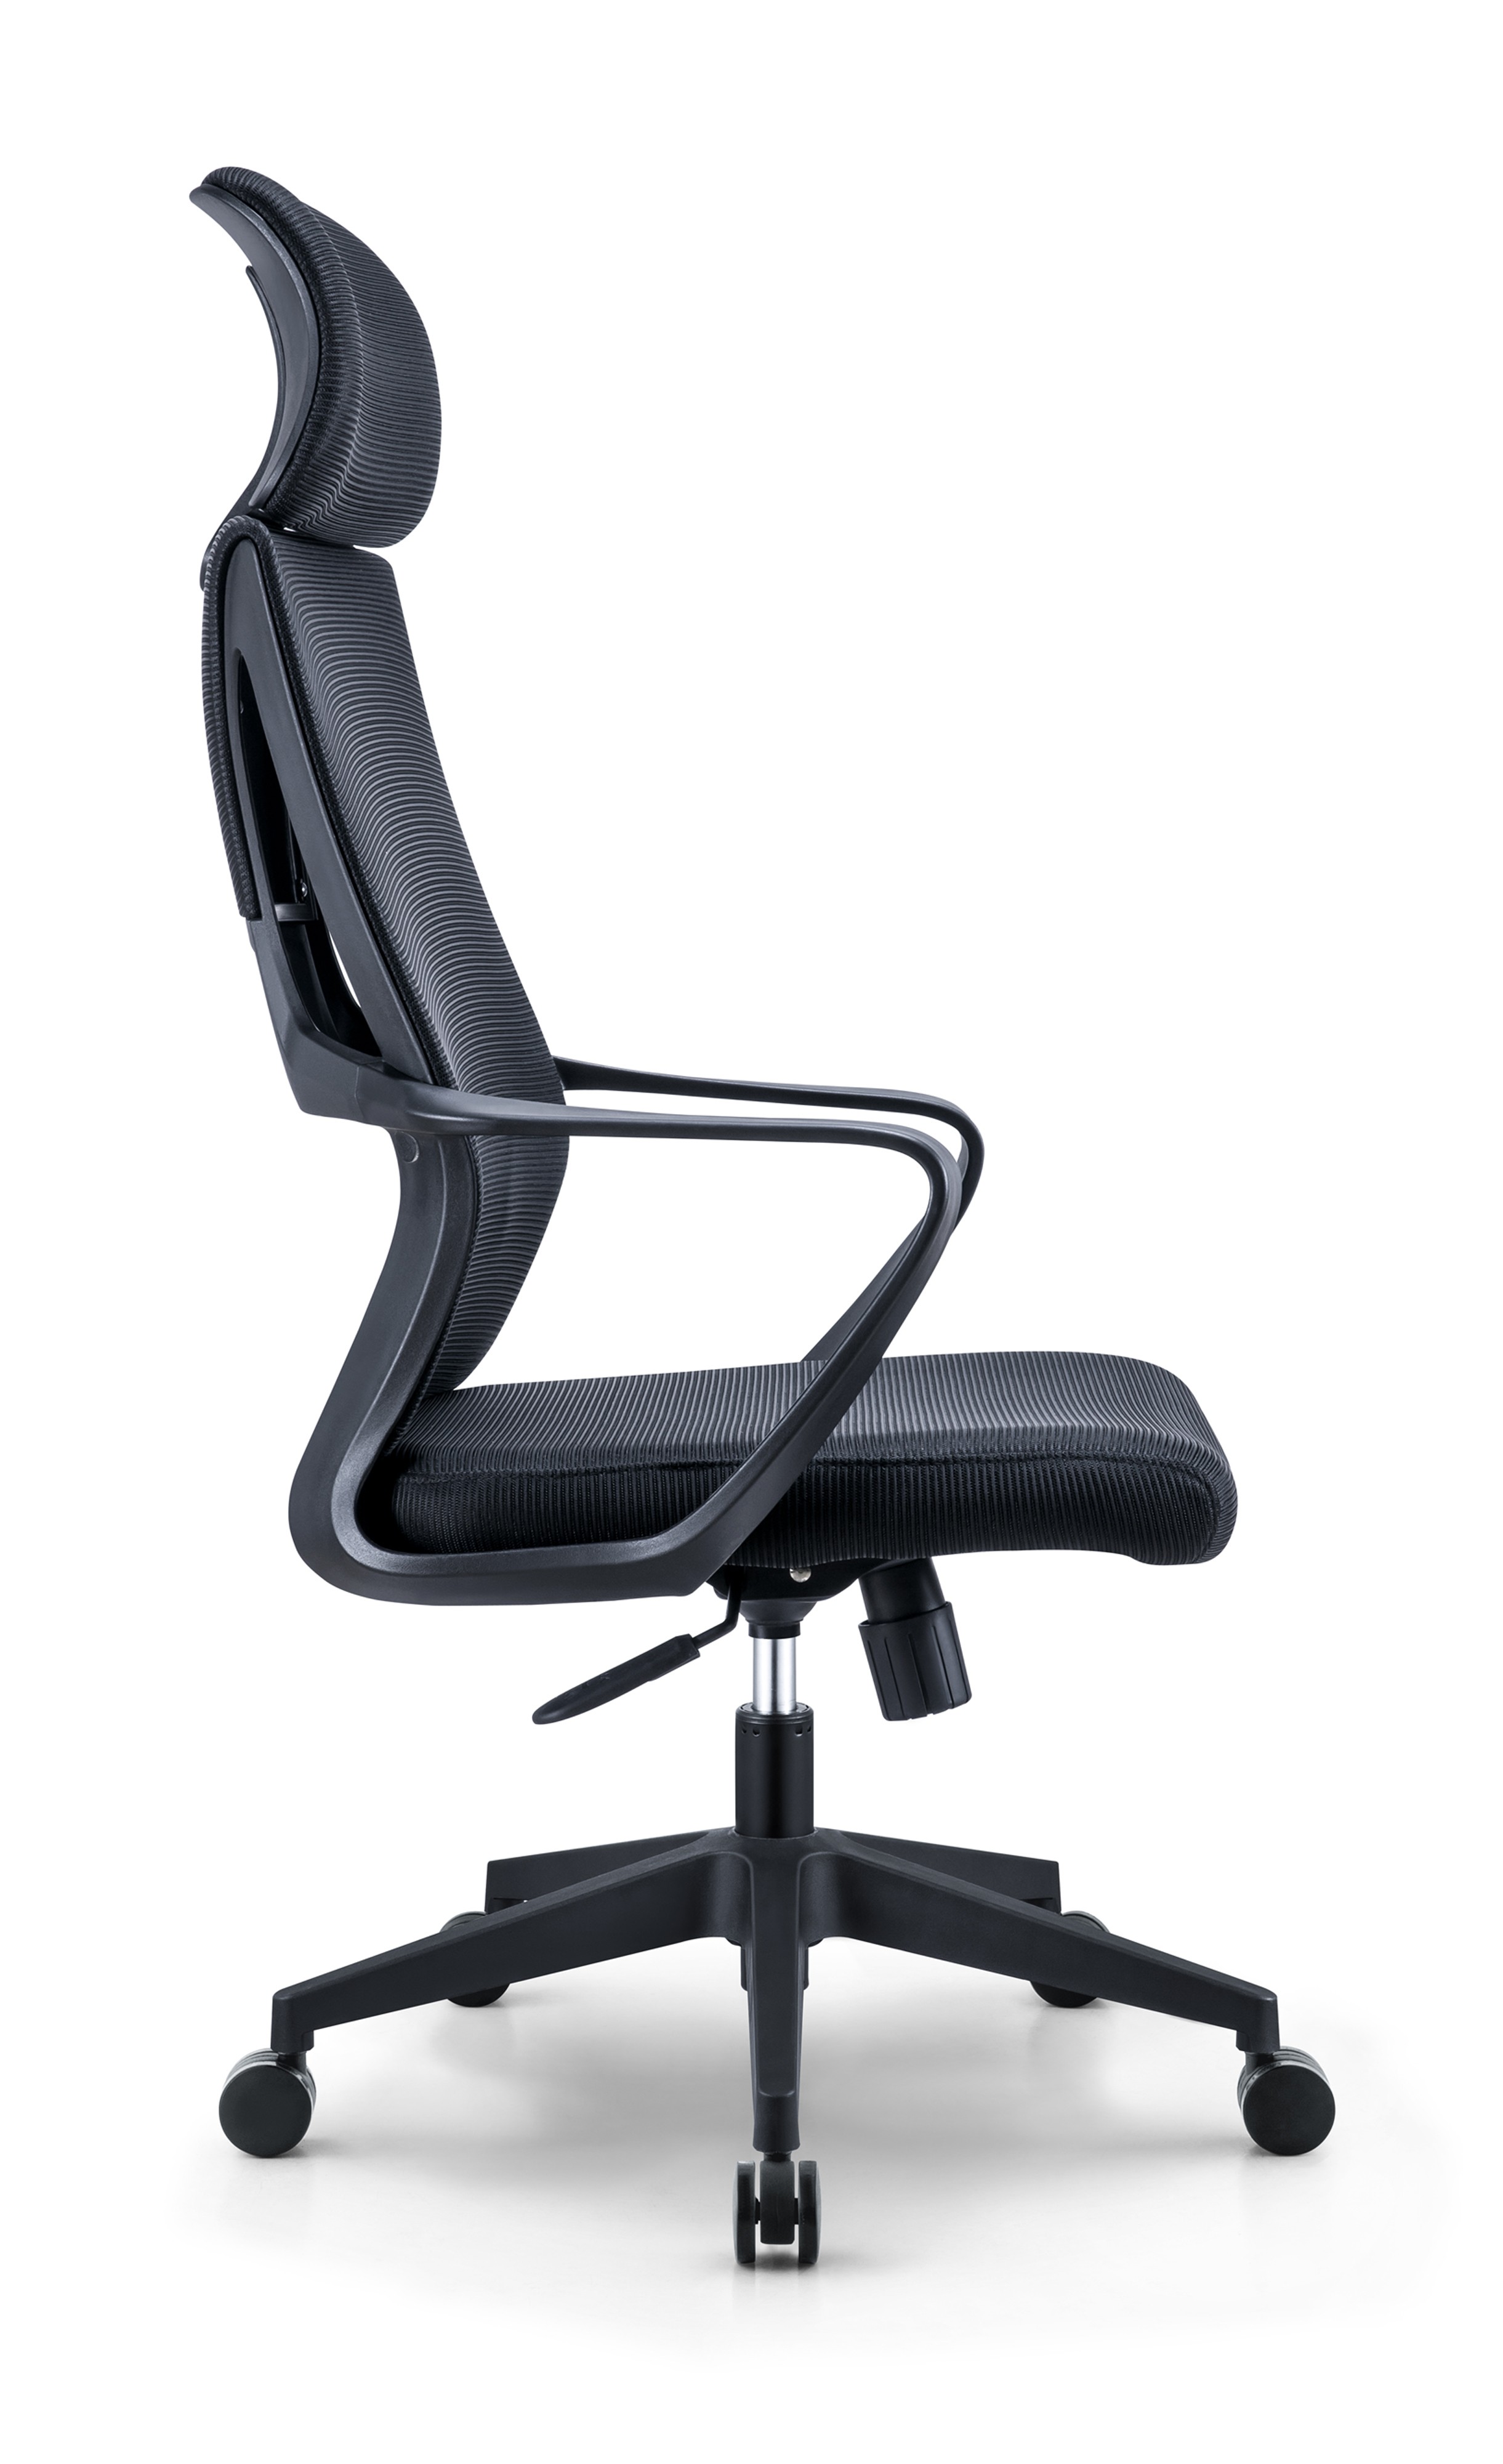 Newcity 544A 热销现代高背网椅最优惠价格网椅可调节头枕网椅员工转椅办公家具供应商佛山中国